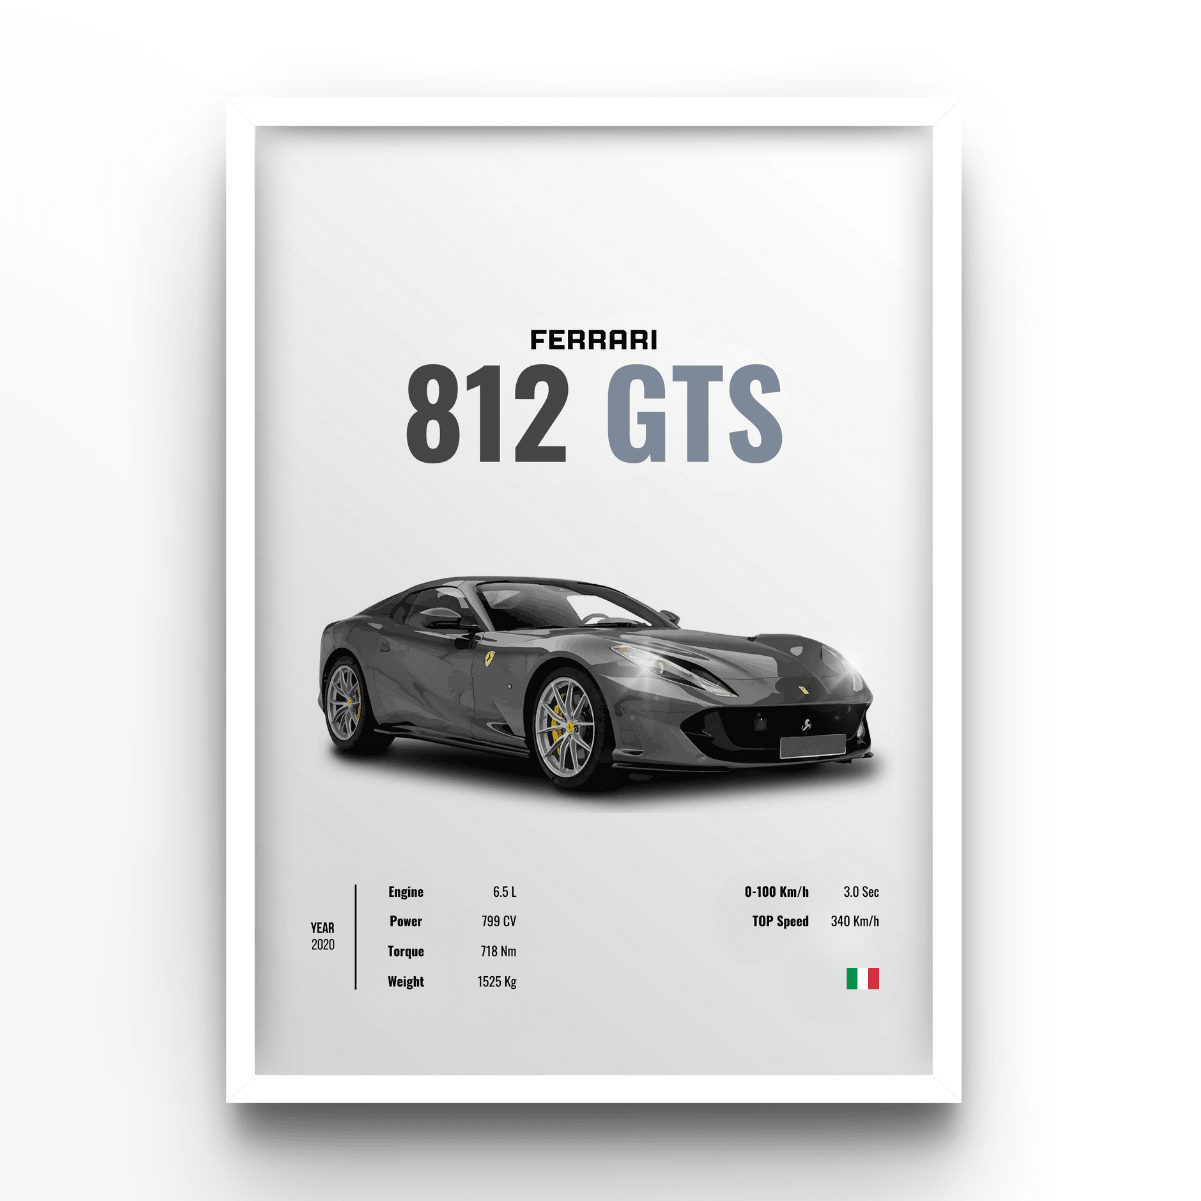 Ferrari 812 GTS - A4, A3, A2 Posters Base - Poster Print Shop / Art Prints / PostersBase